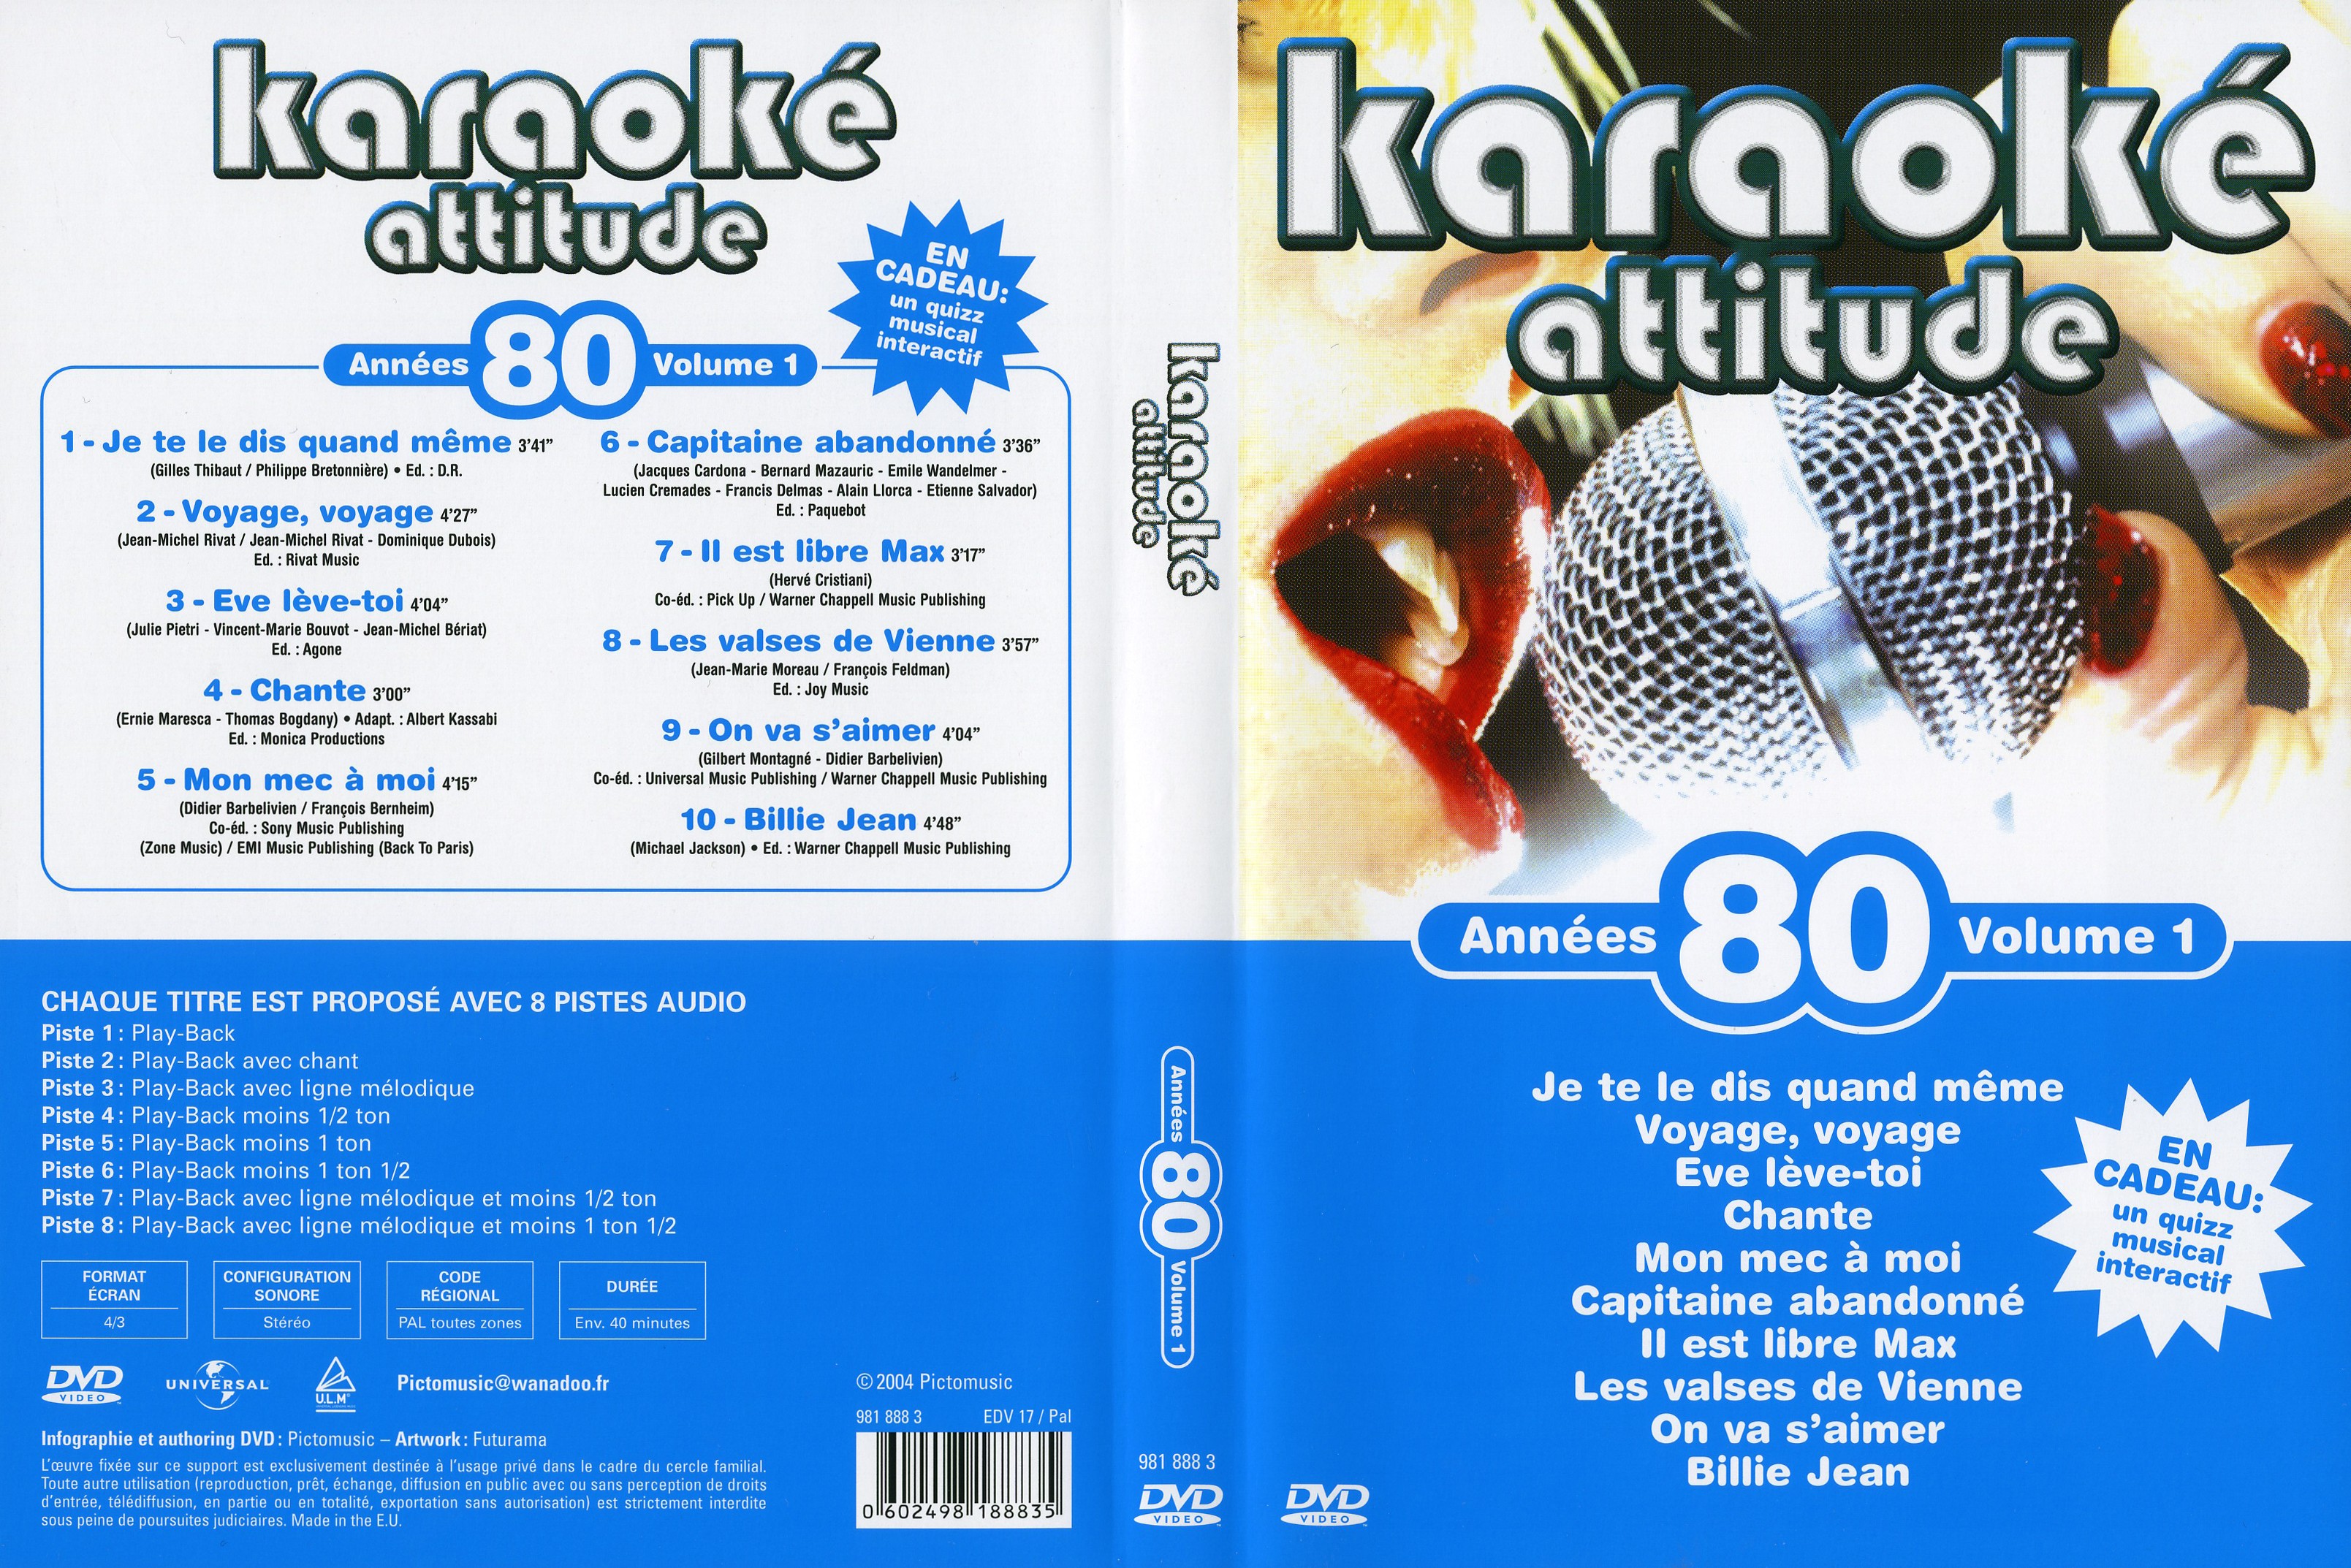 Jaquette DVD de Karaoké Attitude Années 80 vol 1 - Cinéma Passion